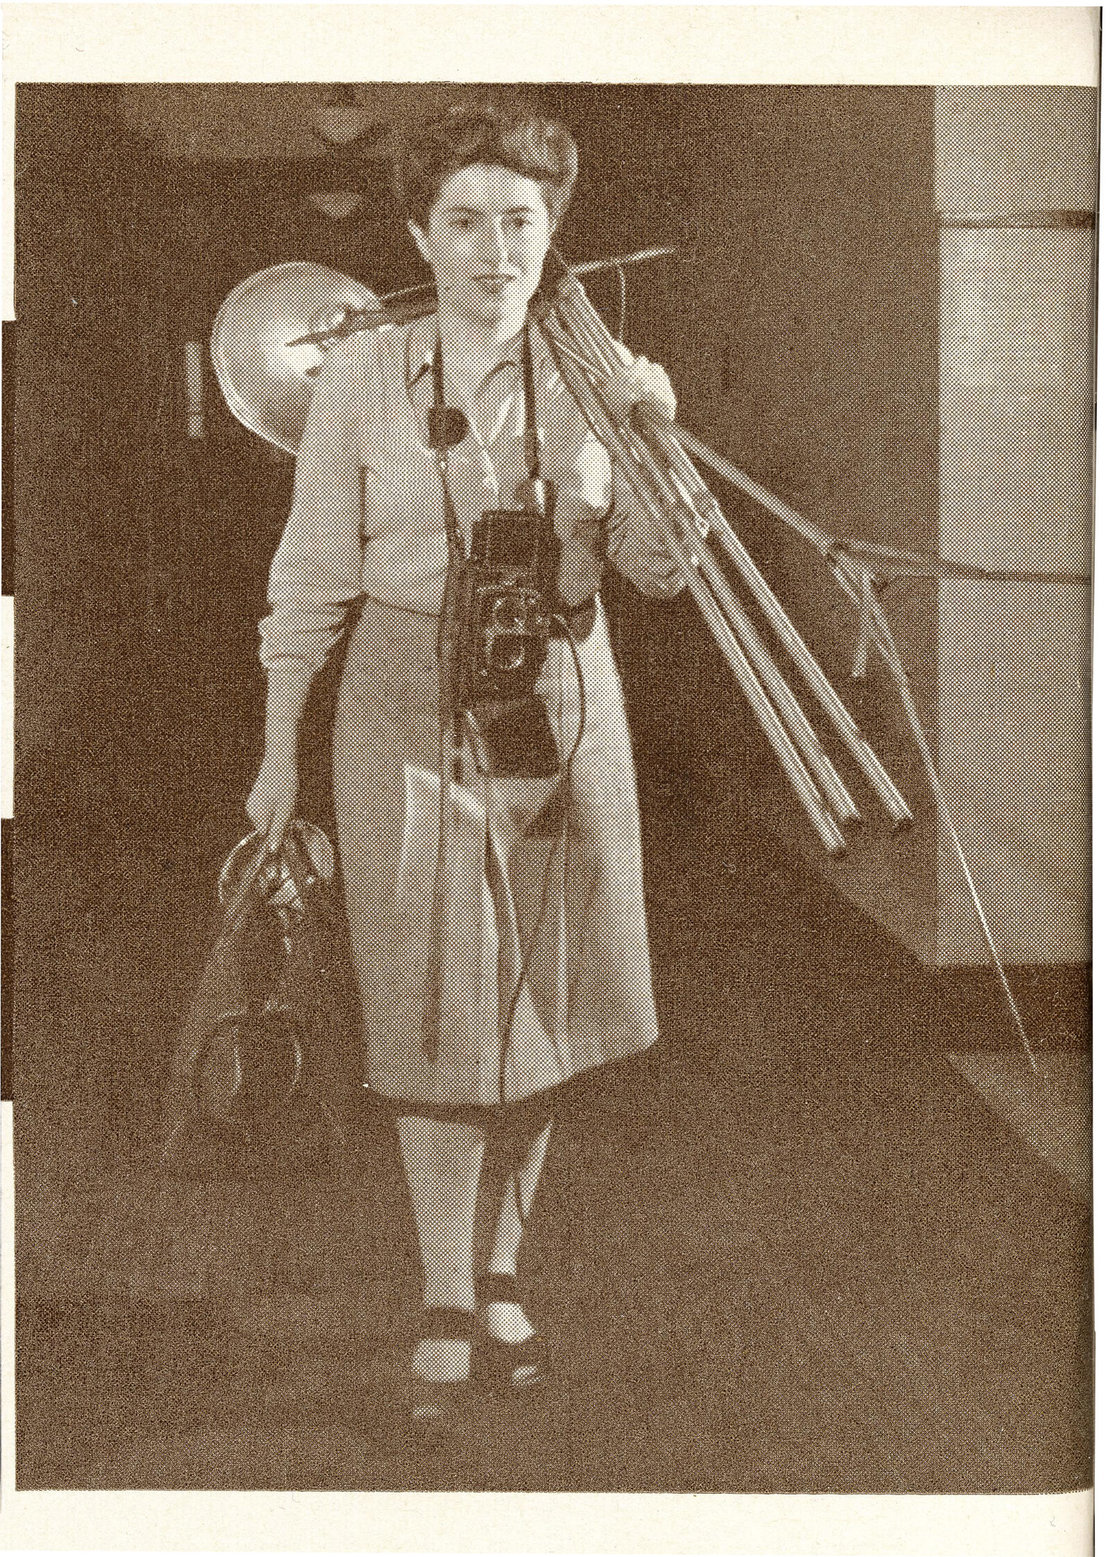 Porträt von Lilly Joss, erschienen in „The Camera“, Sonderheft März 1948 